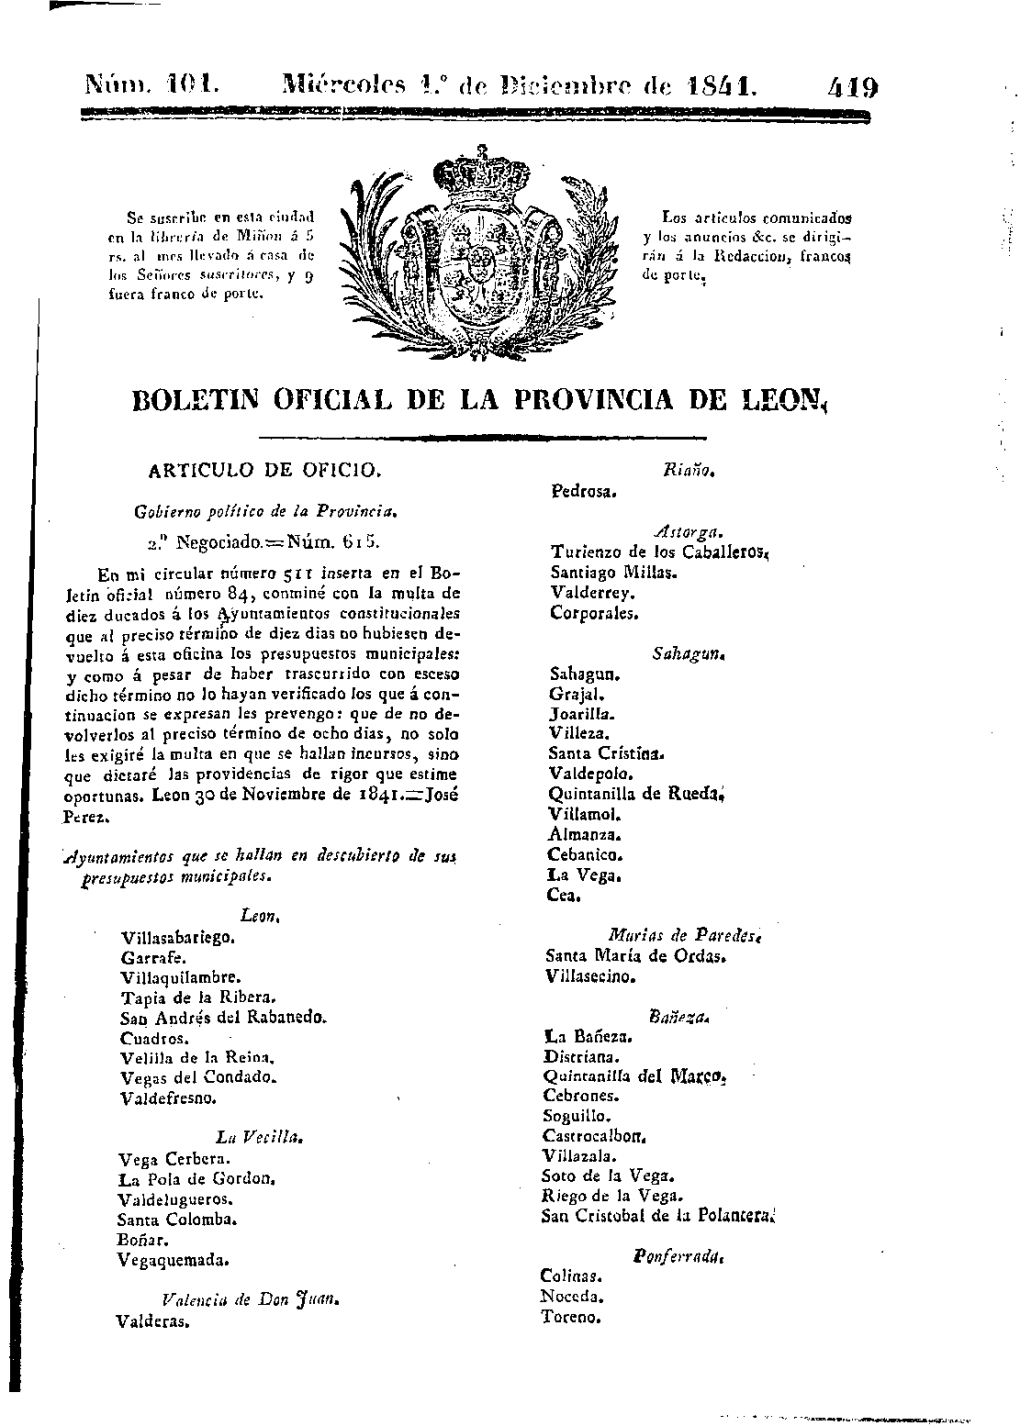 Iércolcs 1.° De Diciembre De 1841. 419 BOLETIN OFICIAL DE LA PROVINCIA DE Leons